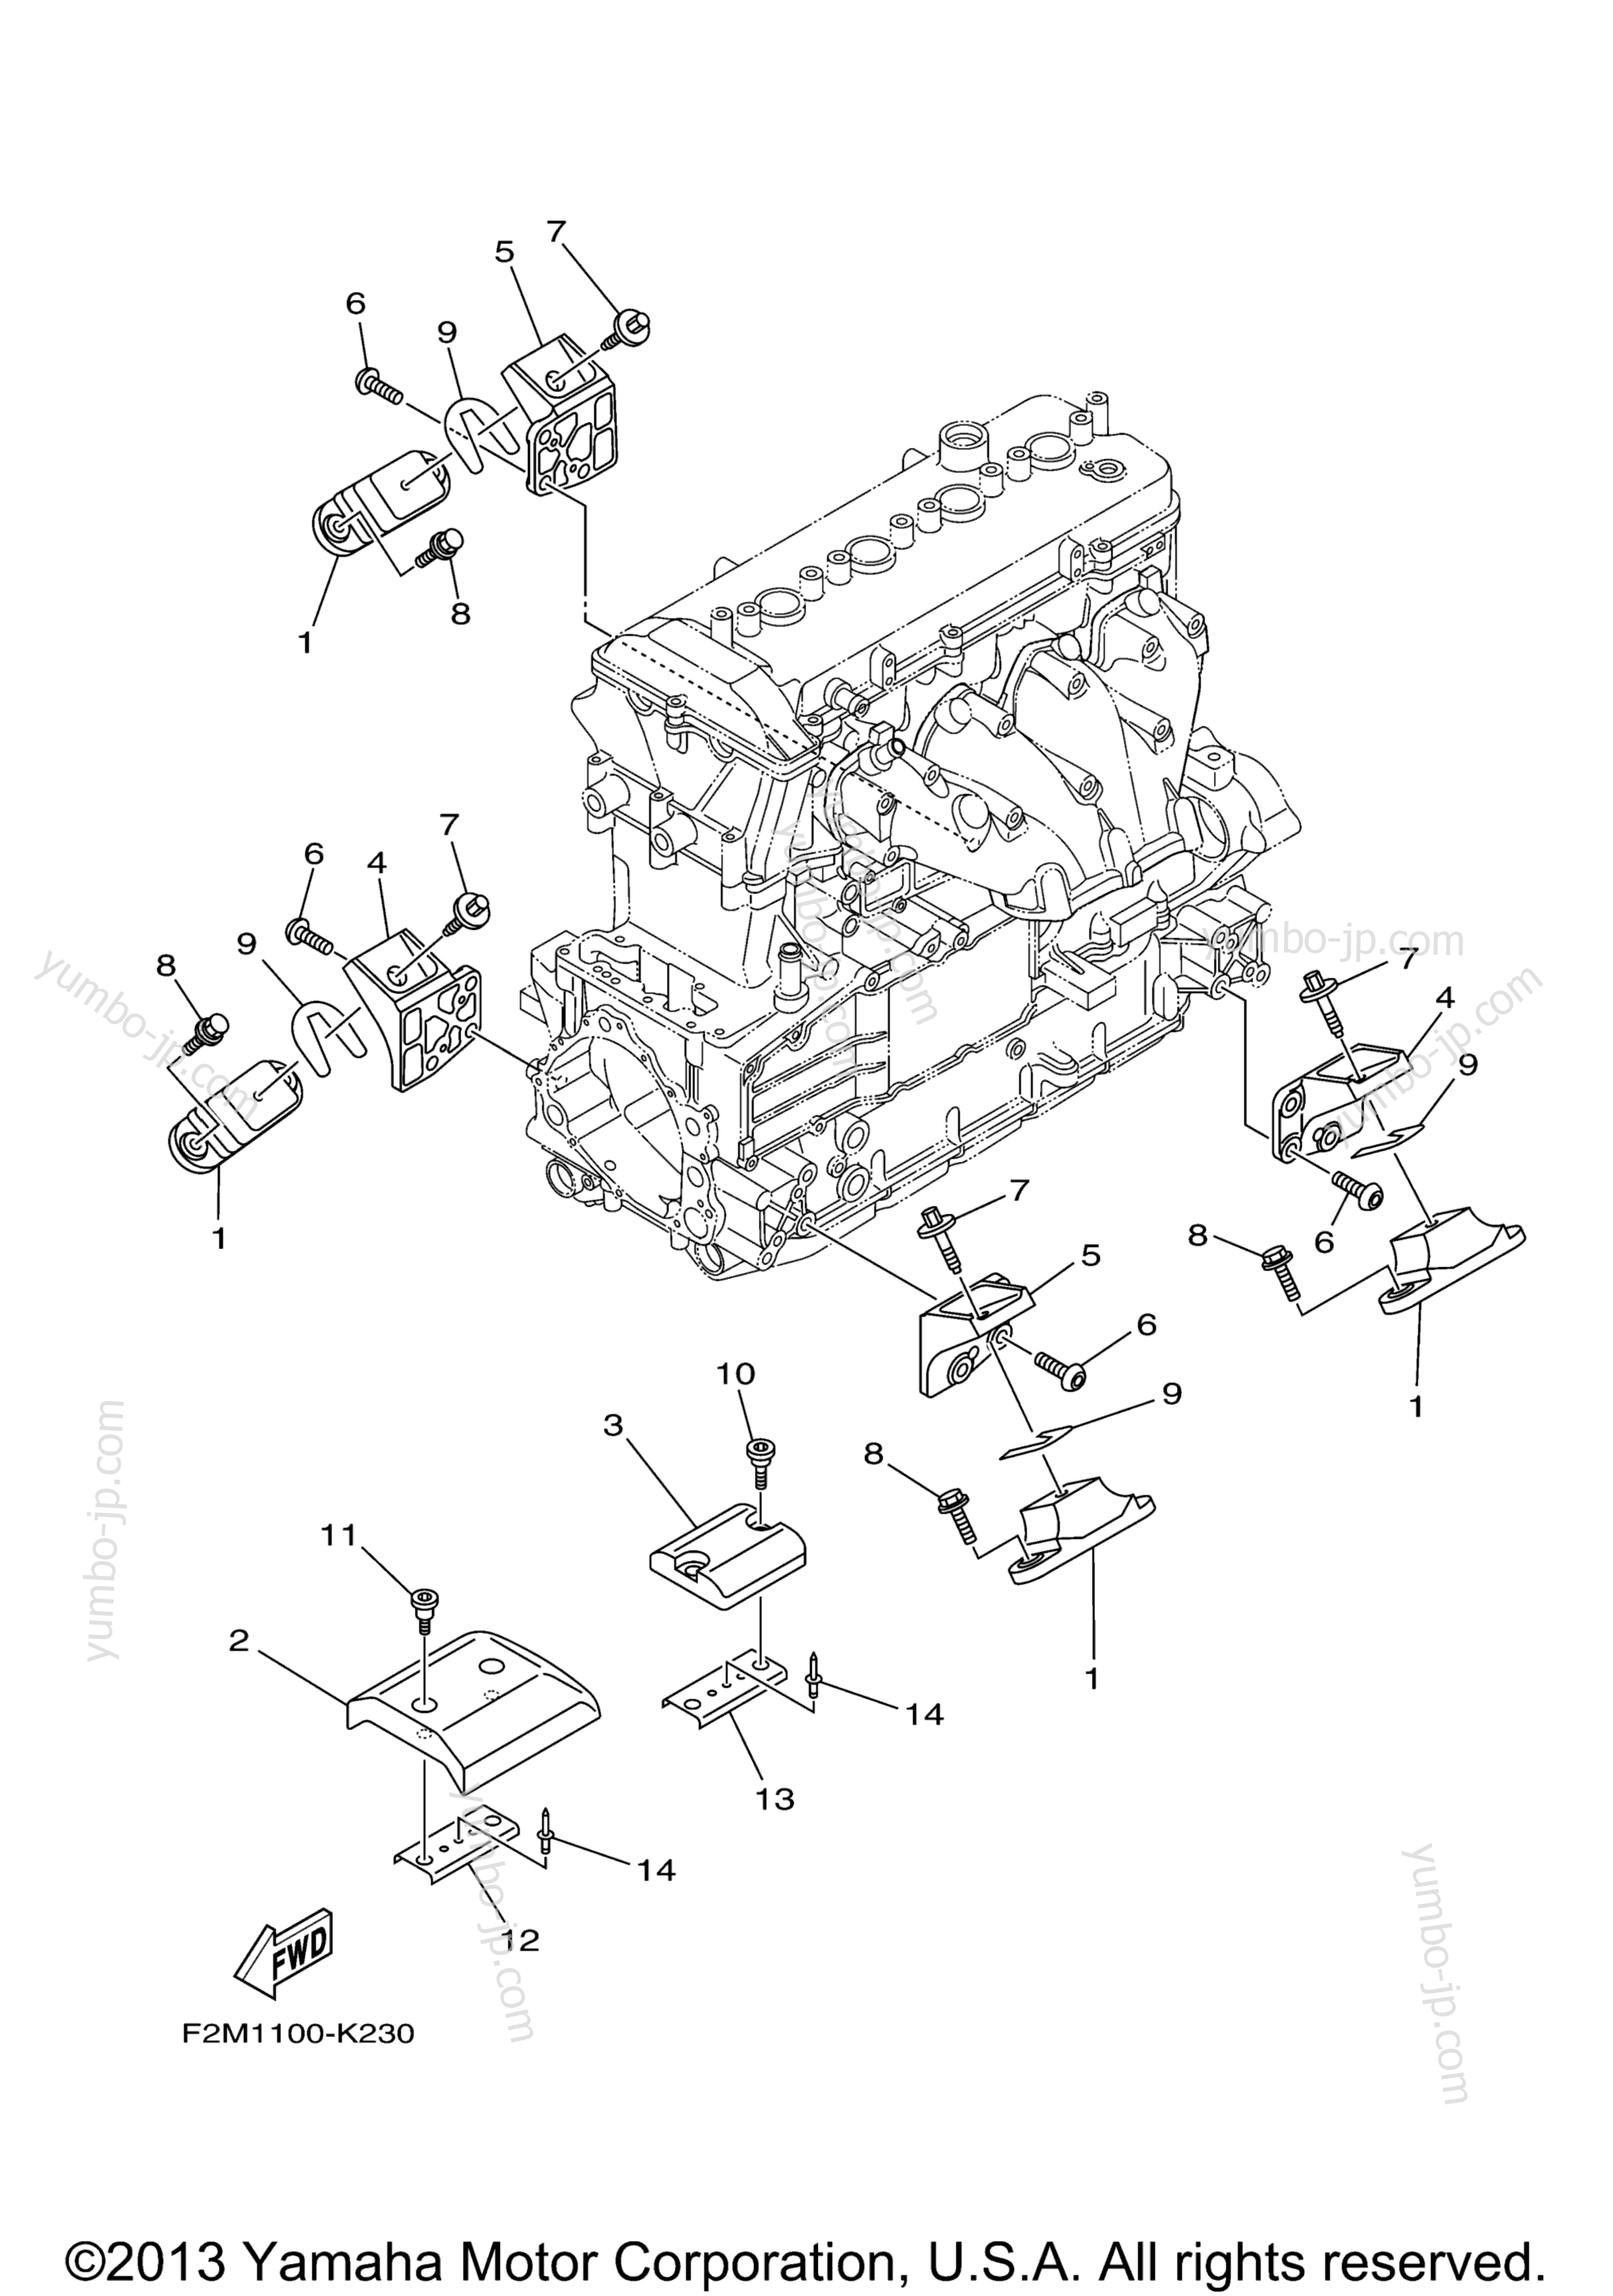 ENGINE MOUNT для гидроциклов YAMAHA VXR (VX1800AN) 2014 г.